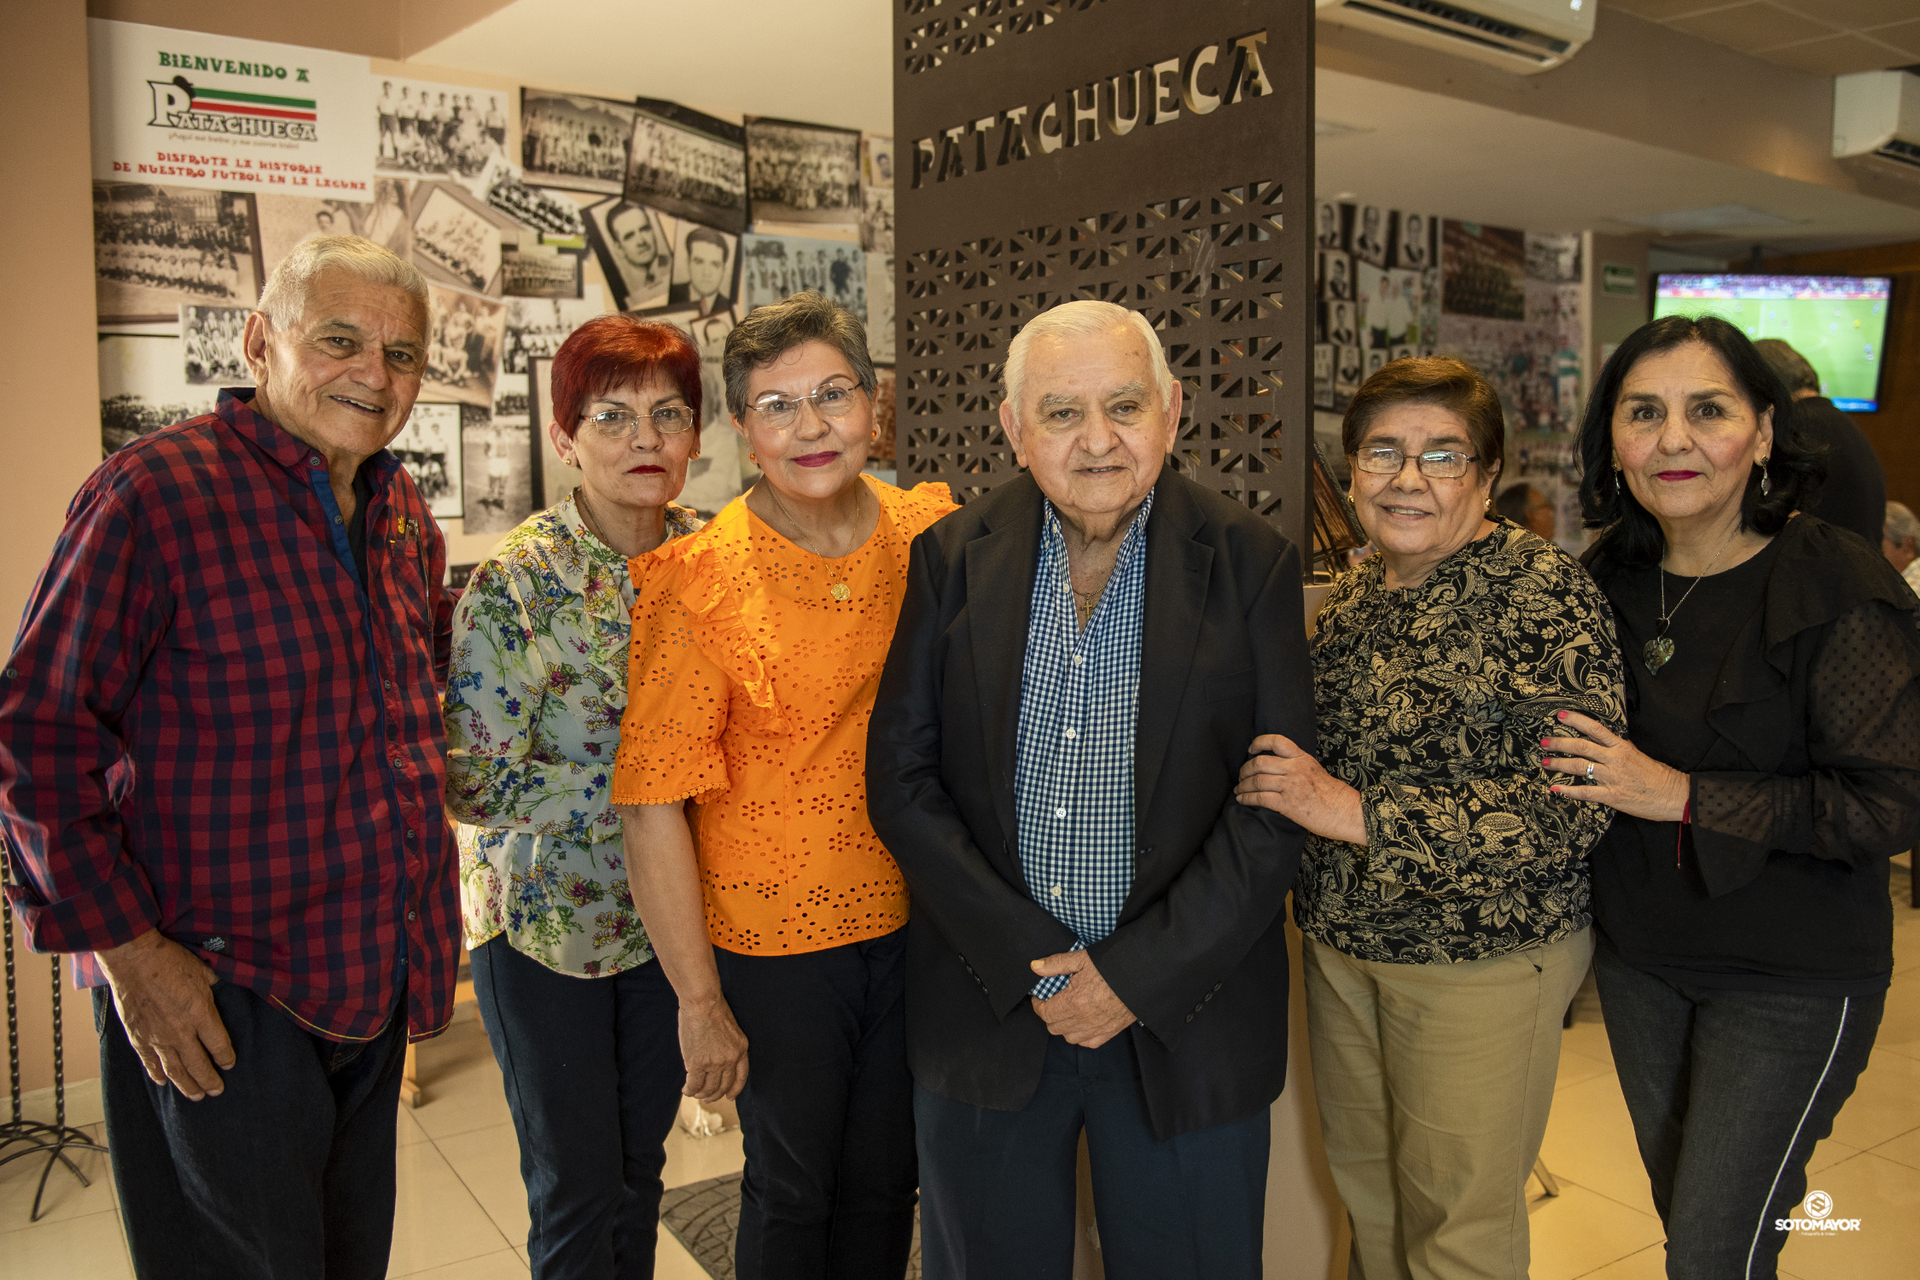 Jorge Rivero acompañado de sus hermanos: Guillermo, Irma, Olga, Silvia y Elvira.- ERICK SOTOMAYOR
FOTOGRAFÍA